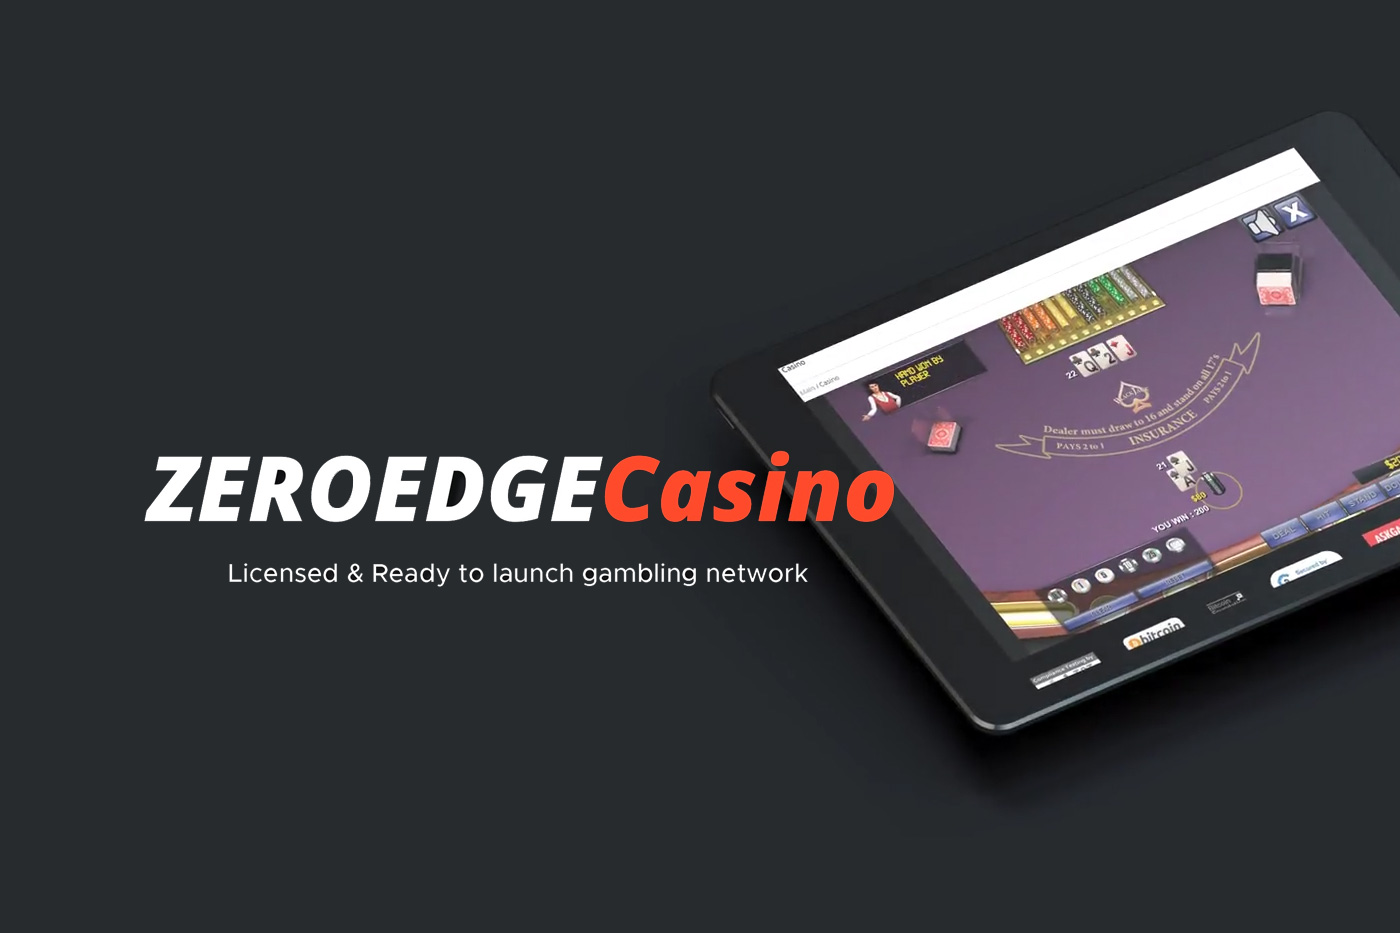 Melhor casino online em portugal